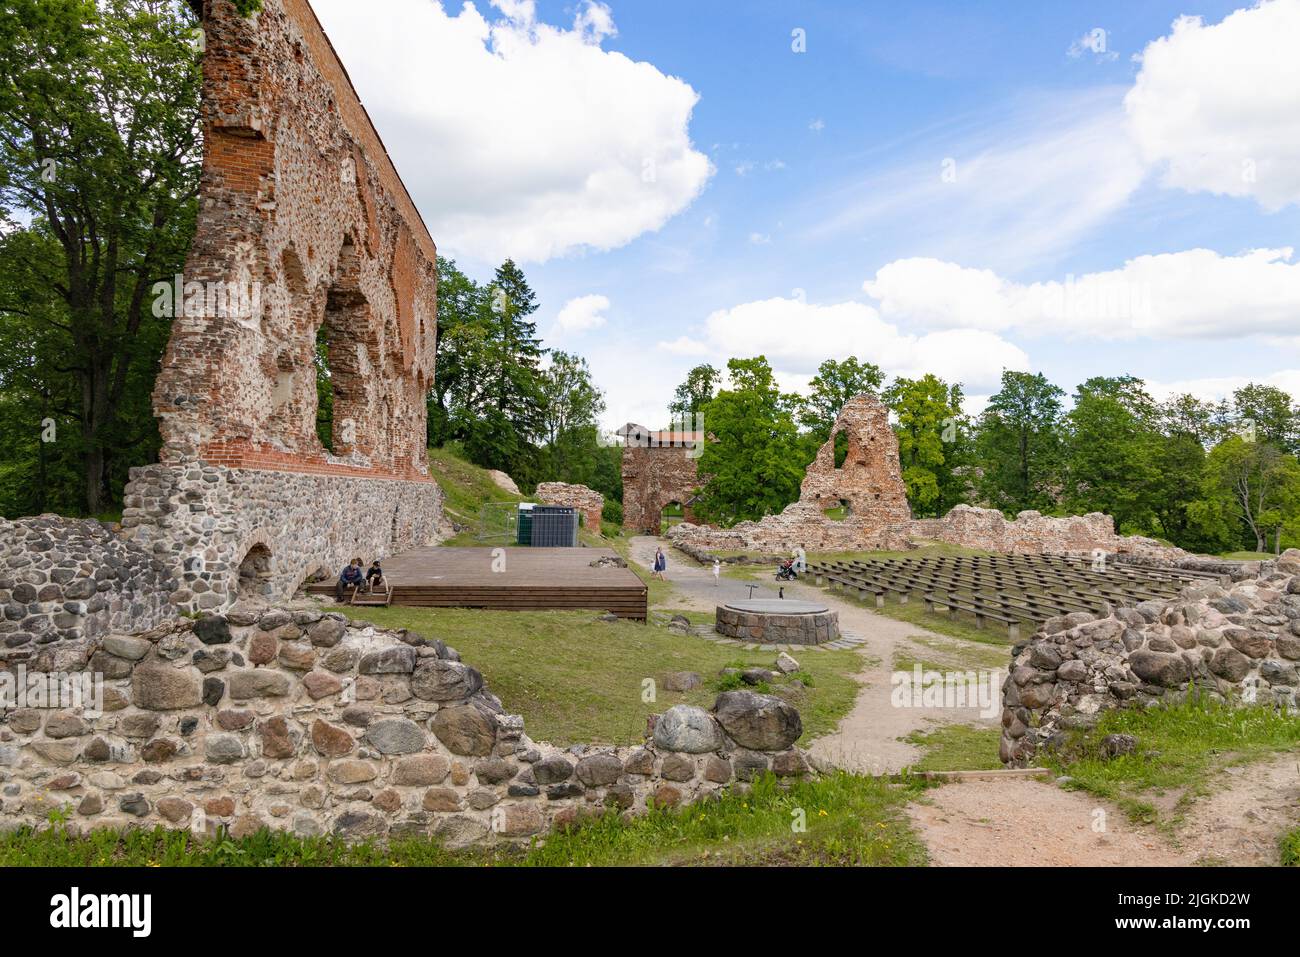 Turisti al Castello di Viljandi, un castello in rovina del 13th secolo ora un'attrazione turistica, Viljandi, Estonia Stati baltici, Europa Foto Stock